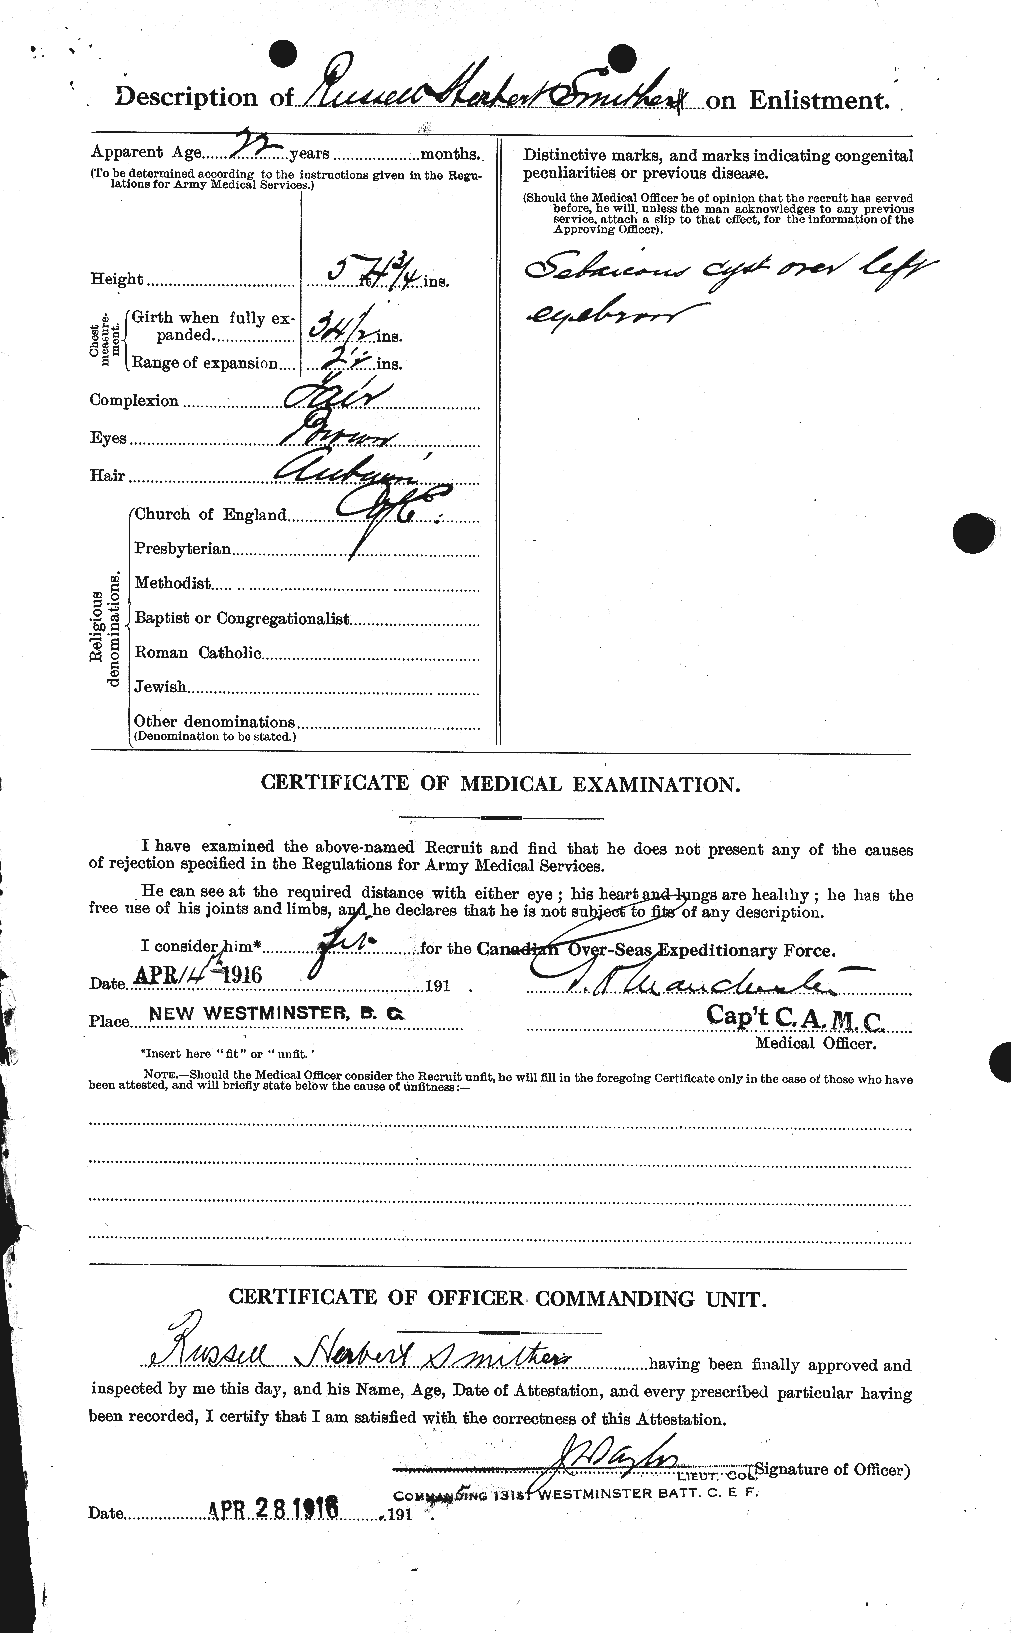 Dossiers du Personnel de la Première Guerre mondiale - CEC 107476b